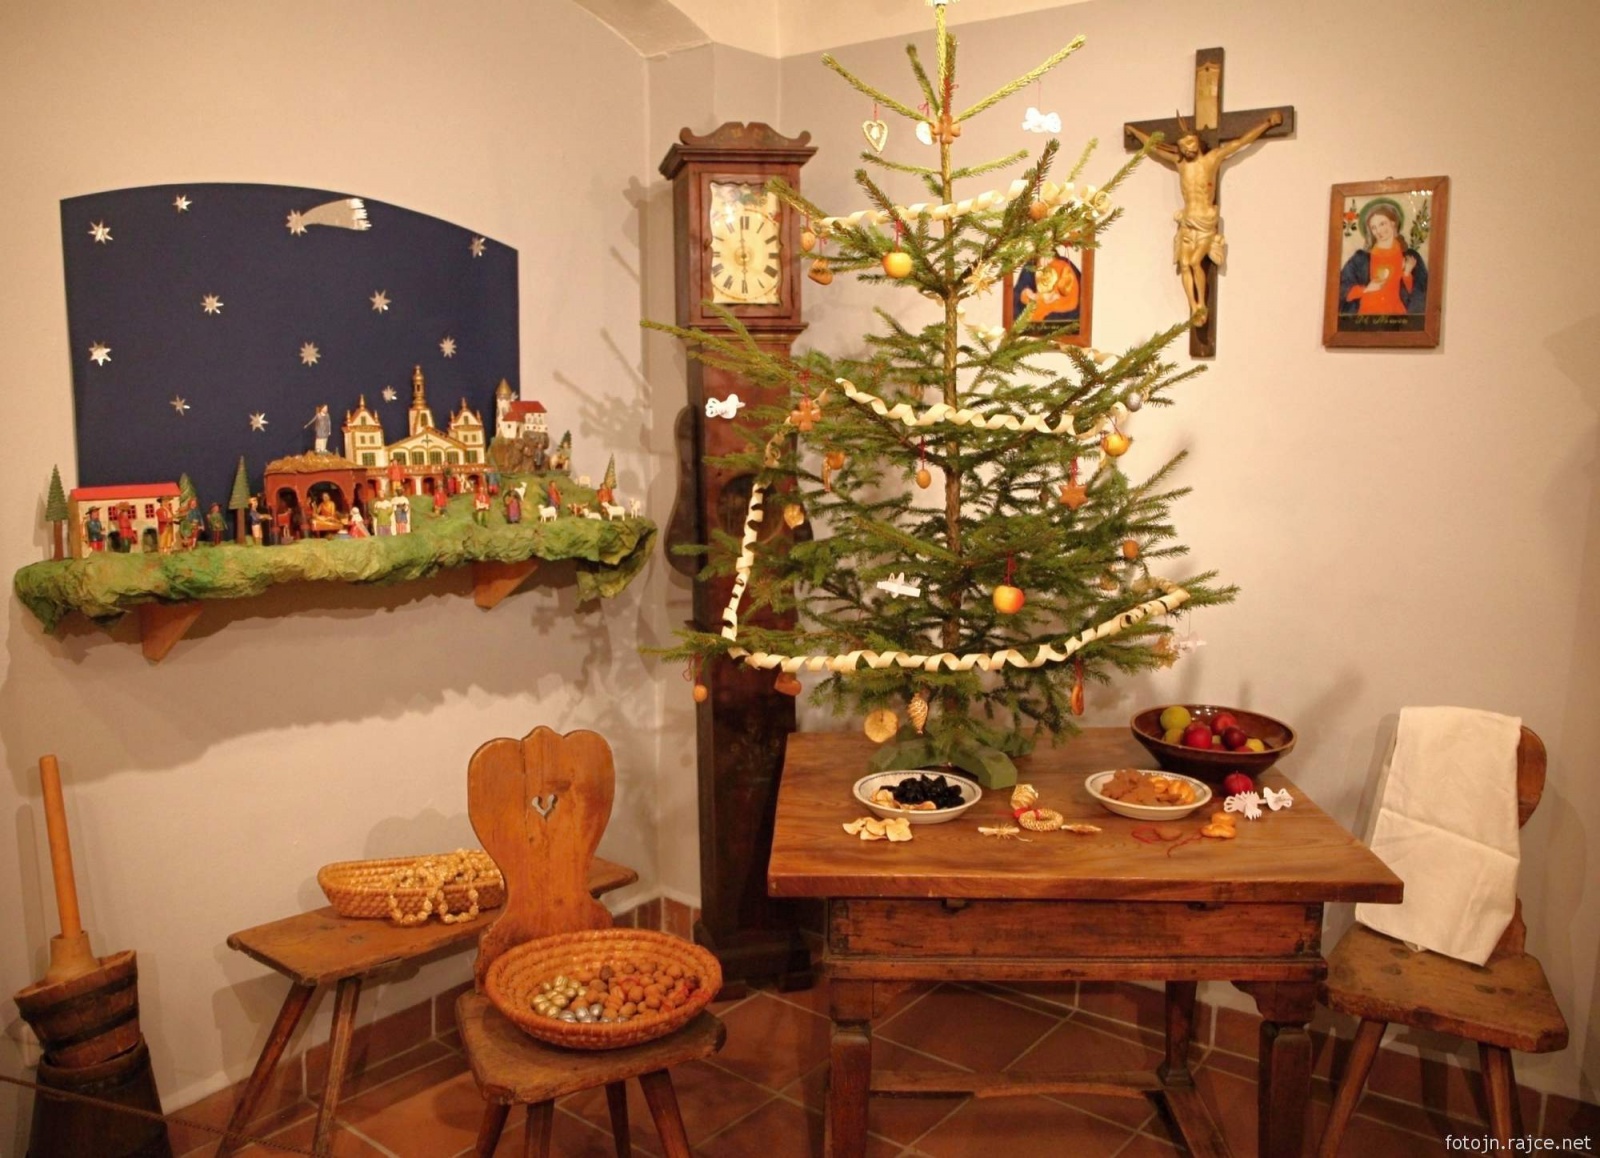 FOTO: Zdobíme vánoční stromeček aneb Vánoční ozdoby v proměnách času -  Krkonošský deník